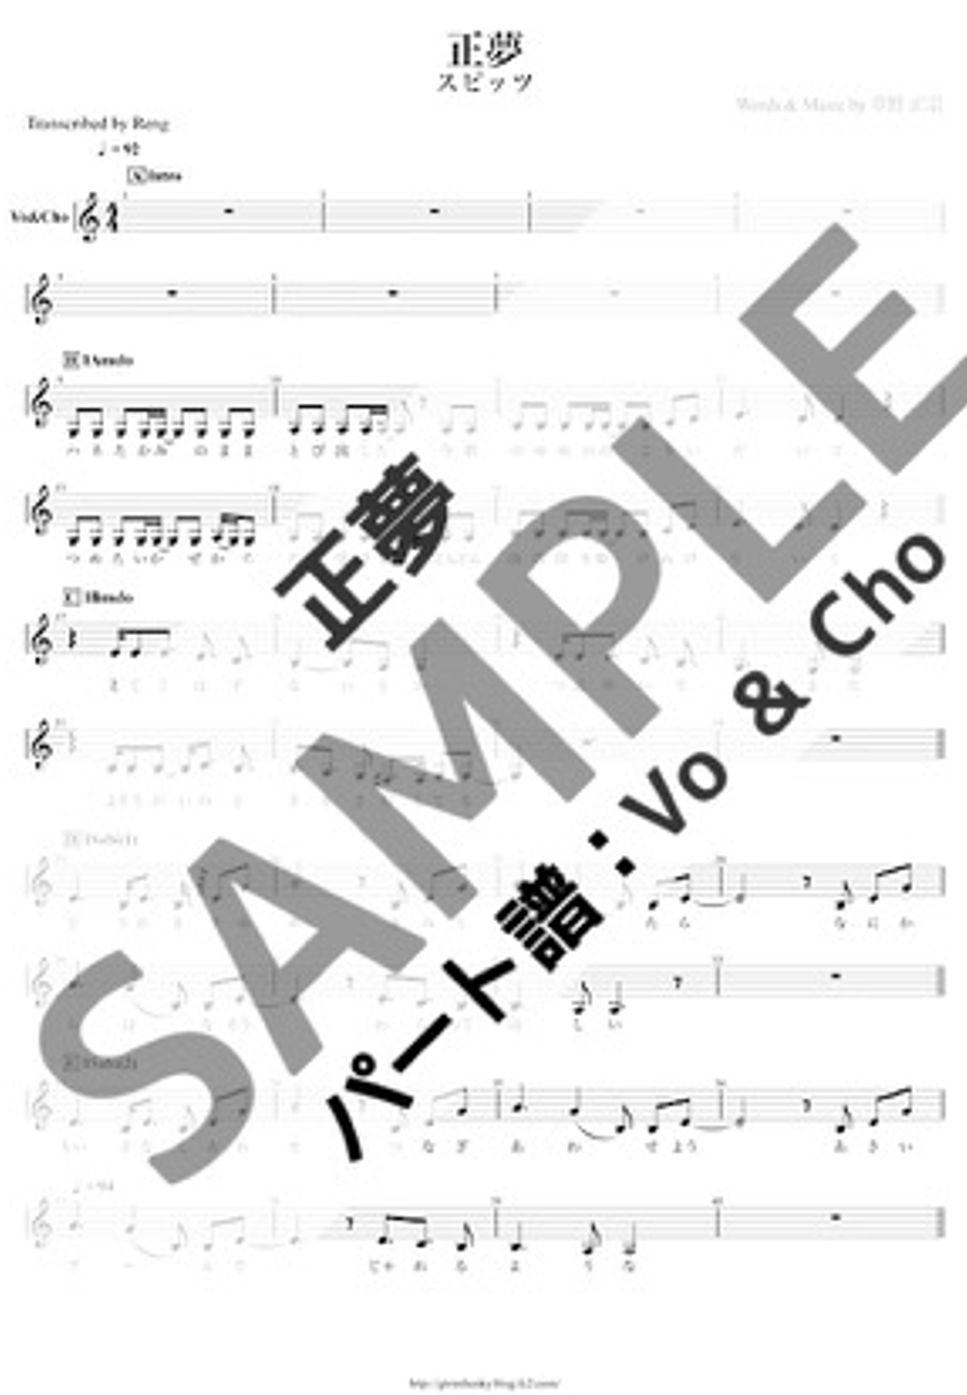 スピッツ - 正夢 (Vo&Cho/主旋律&副旋律/メロディ&ハモリ) by Score by Reng